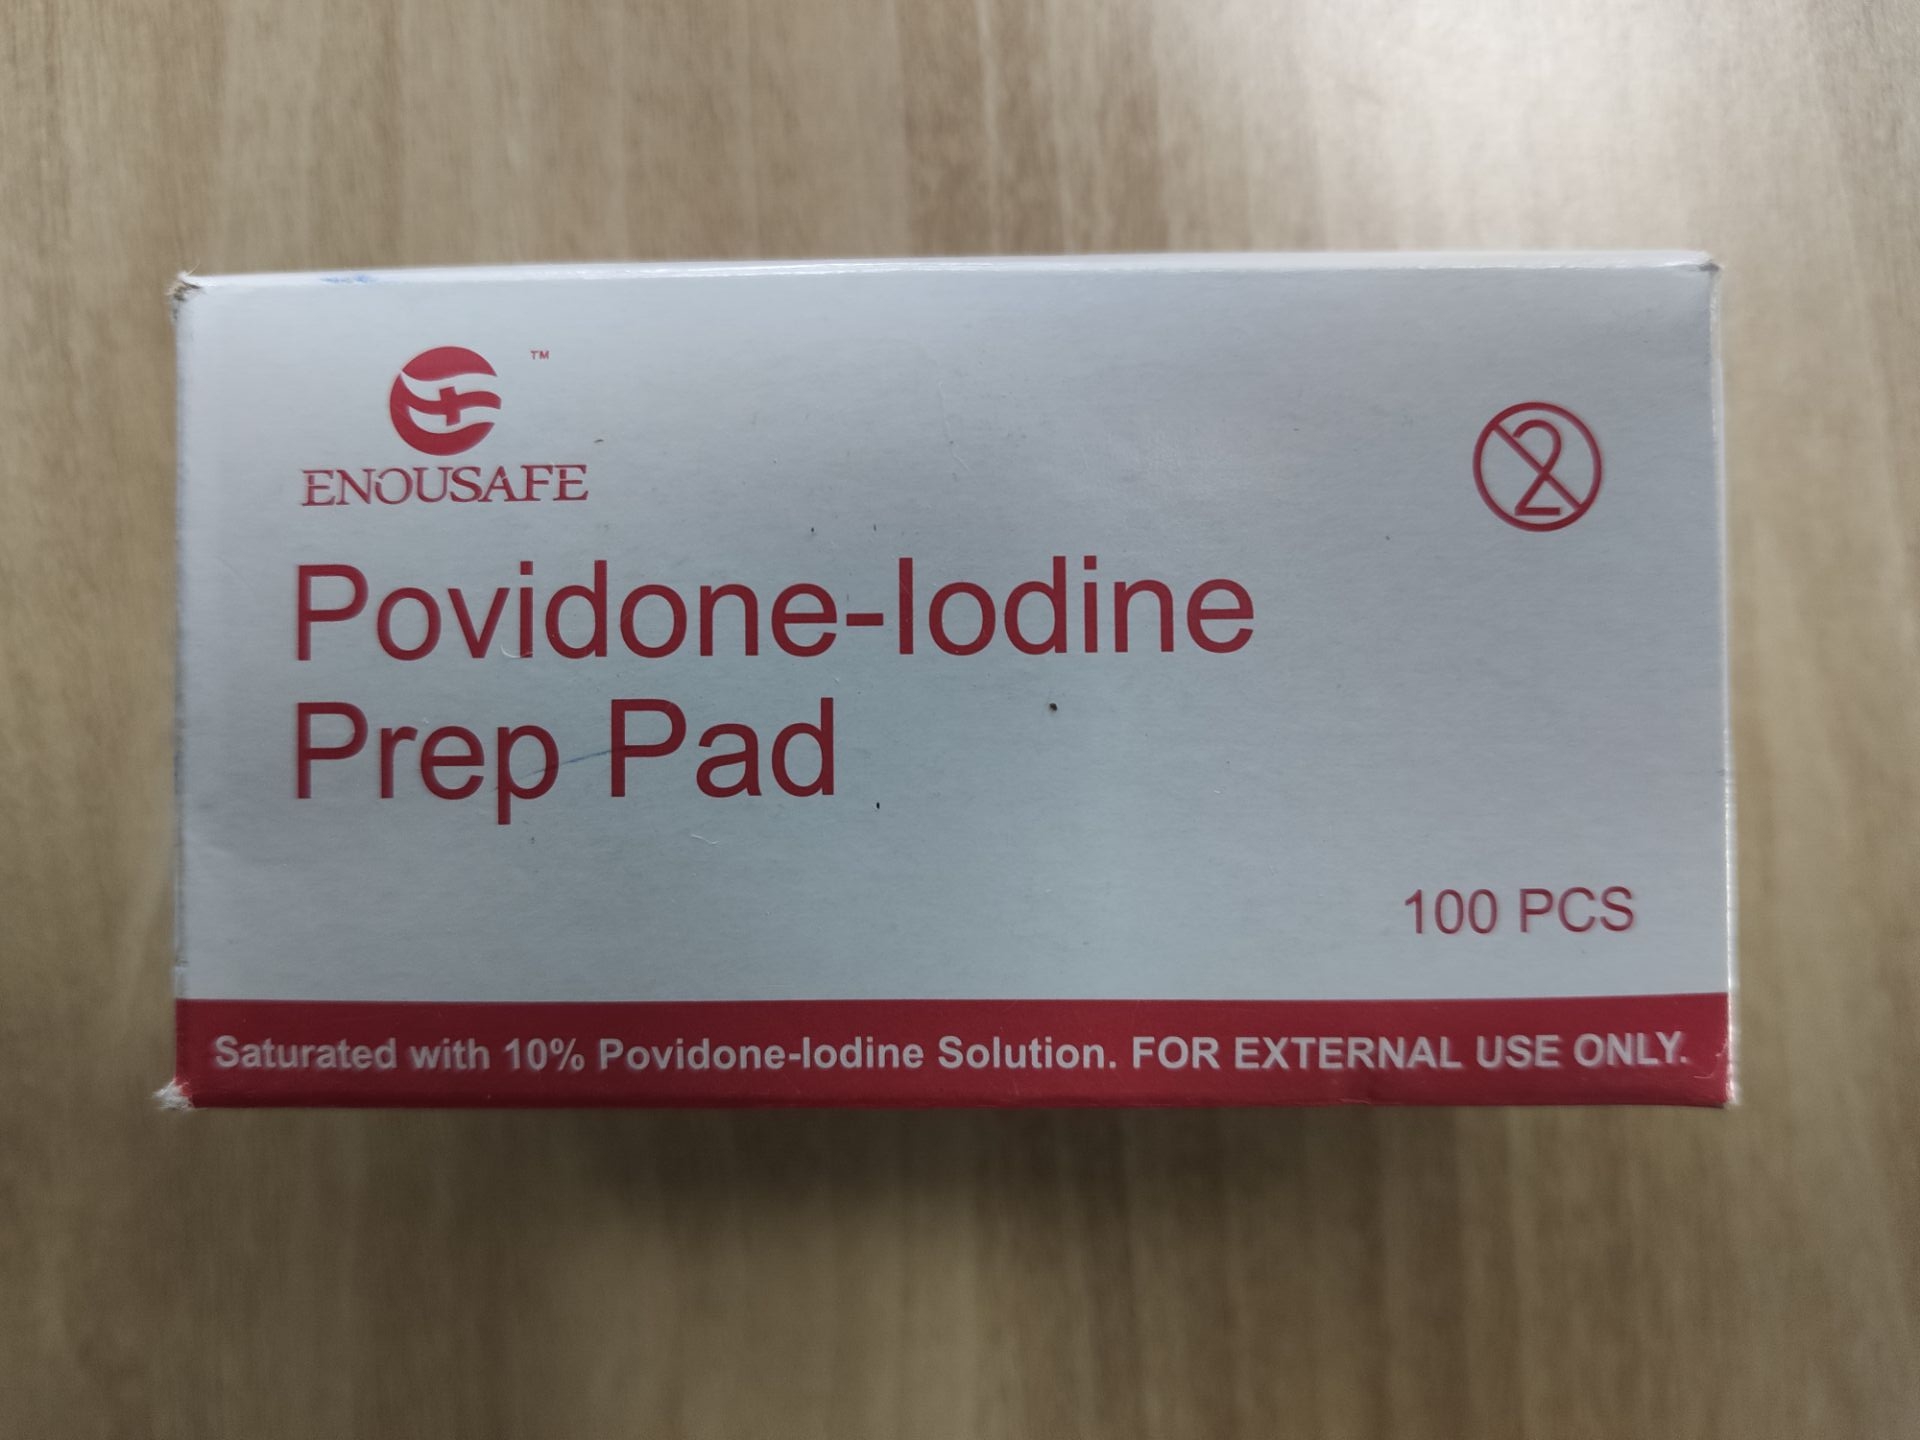 Usage of povidone iodine pad